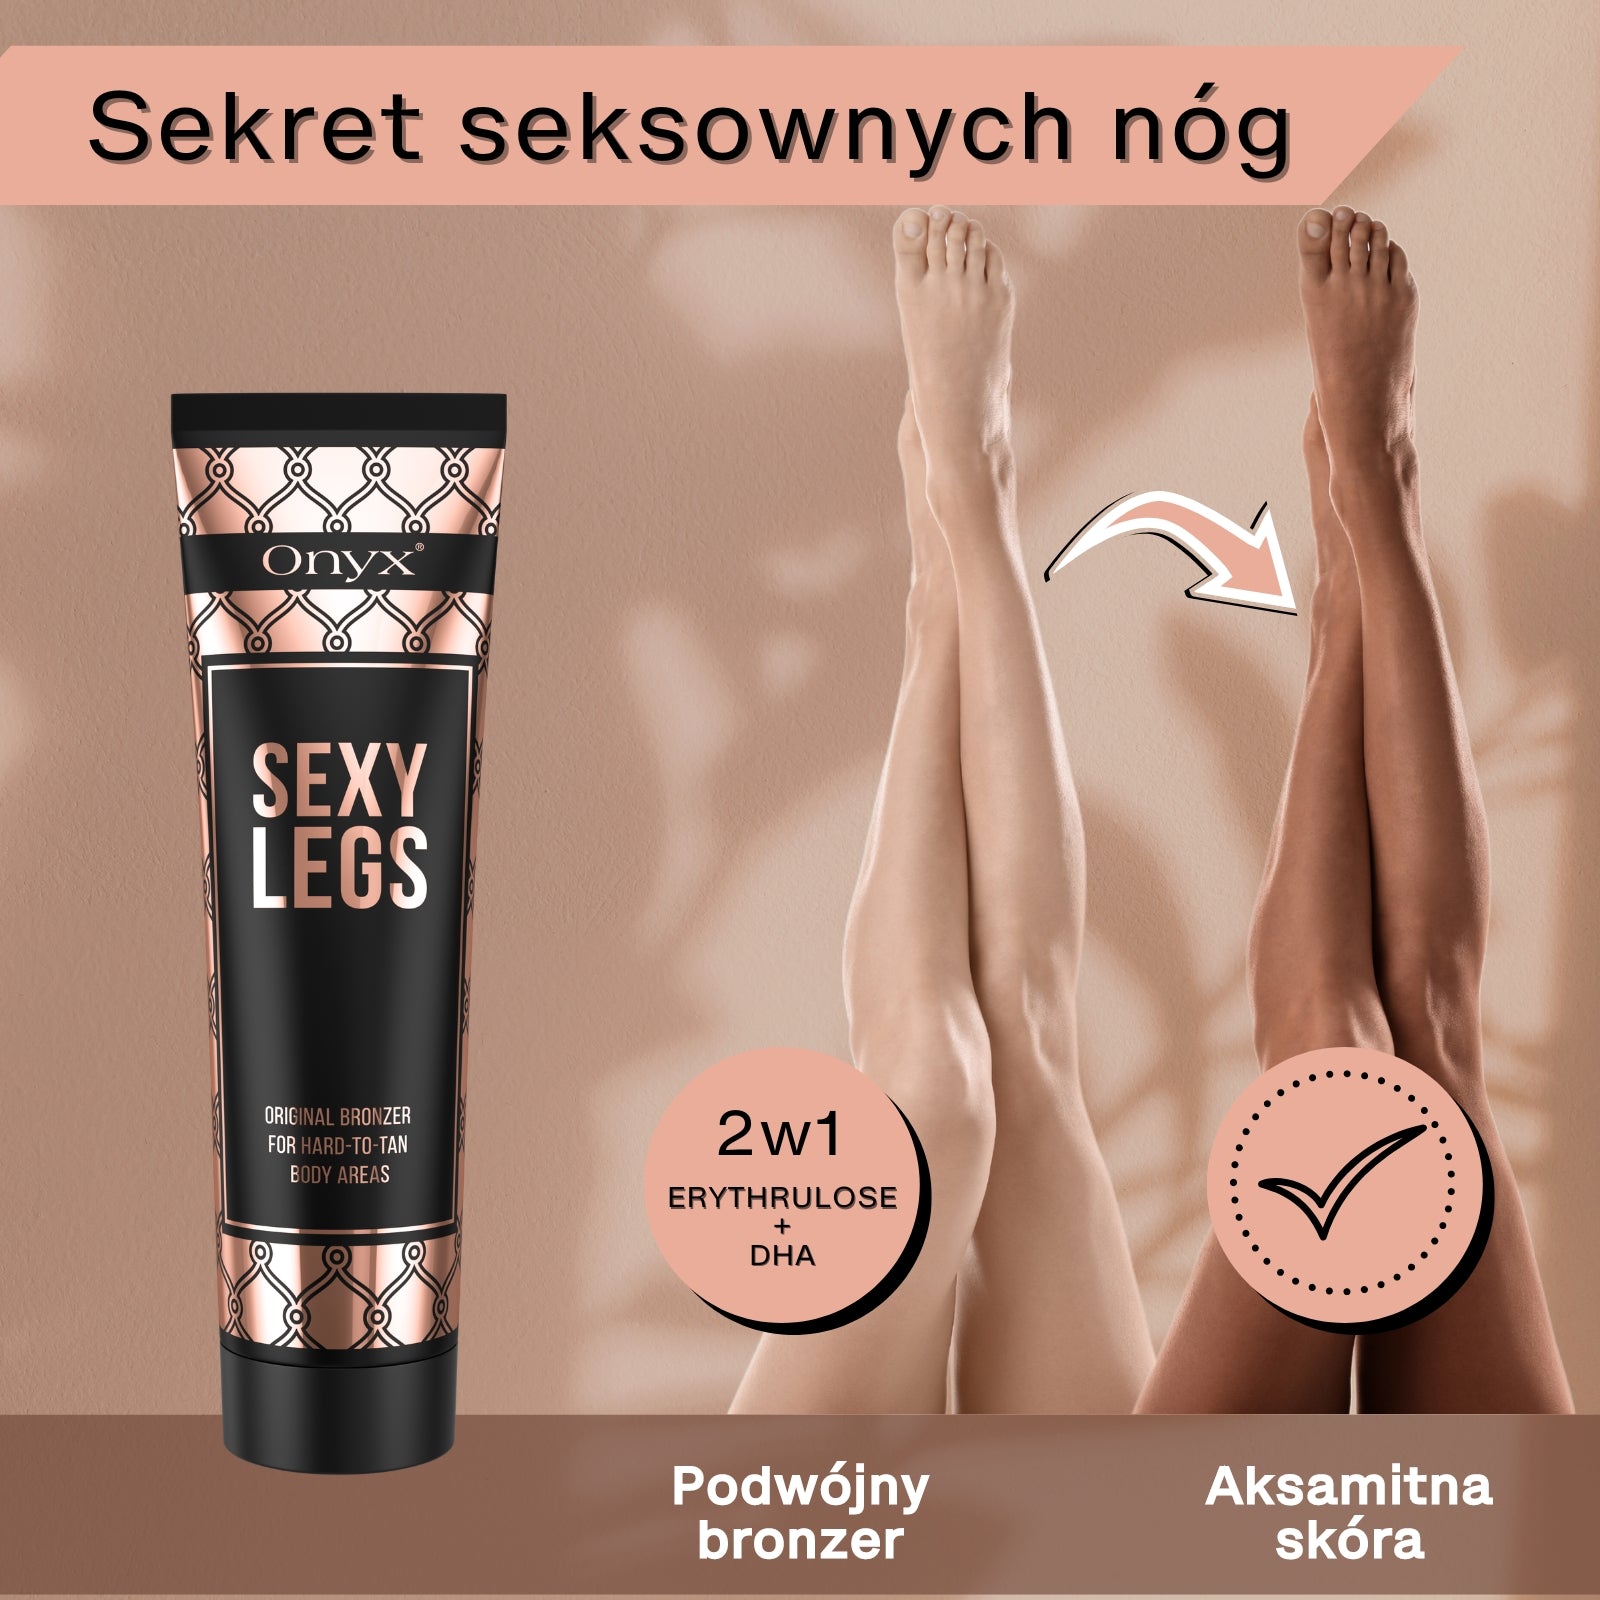 Onyx Sekret seksownych nóg